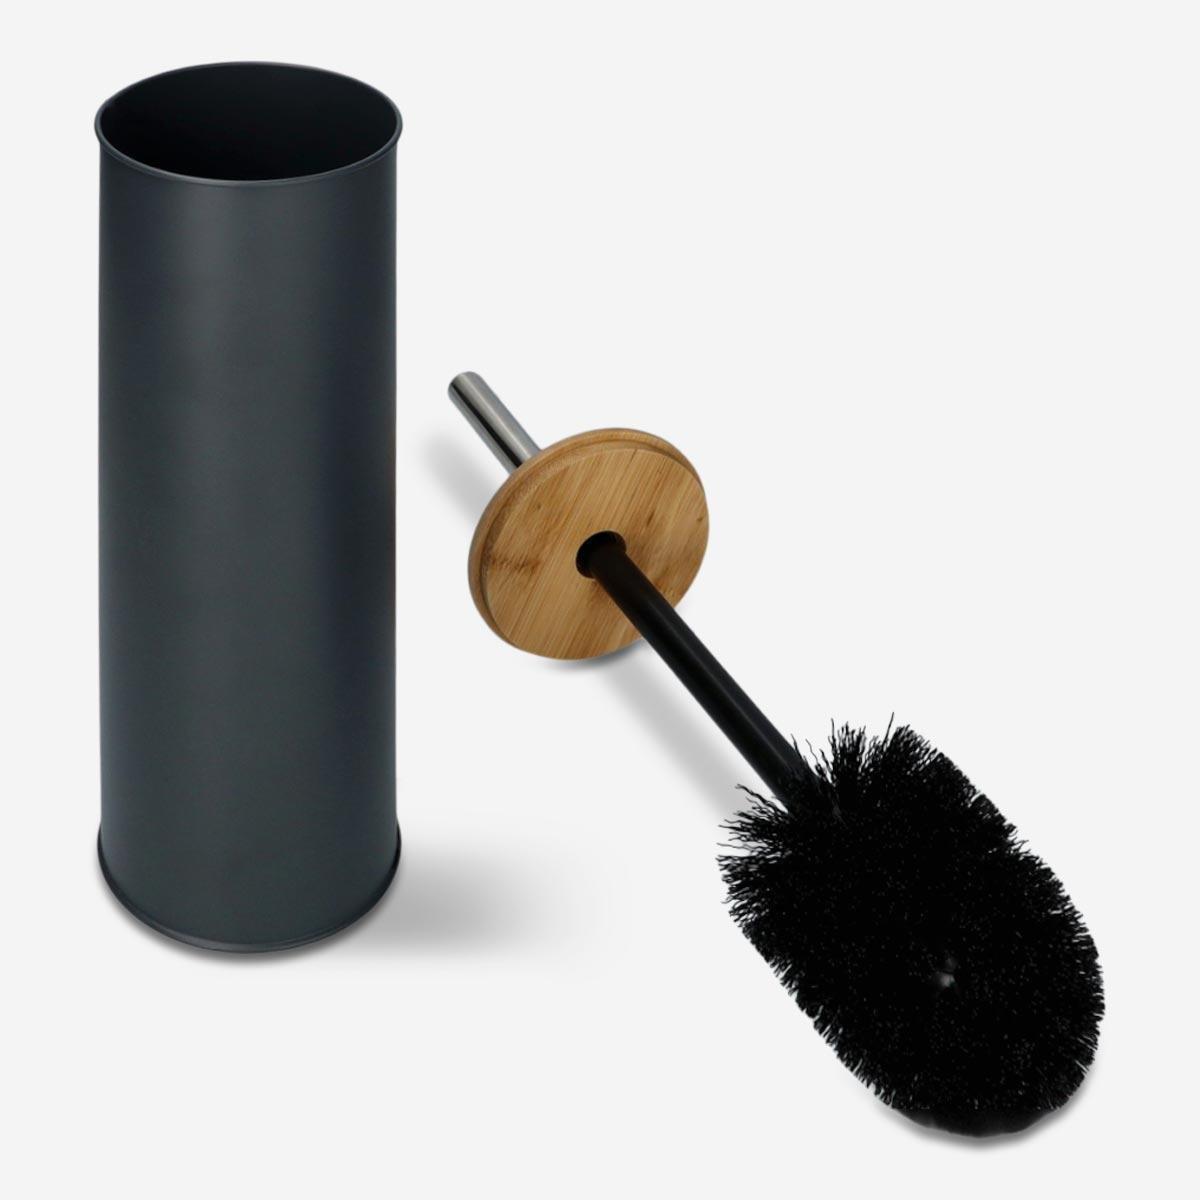 Black toilet brush